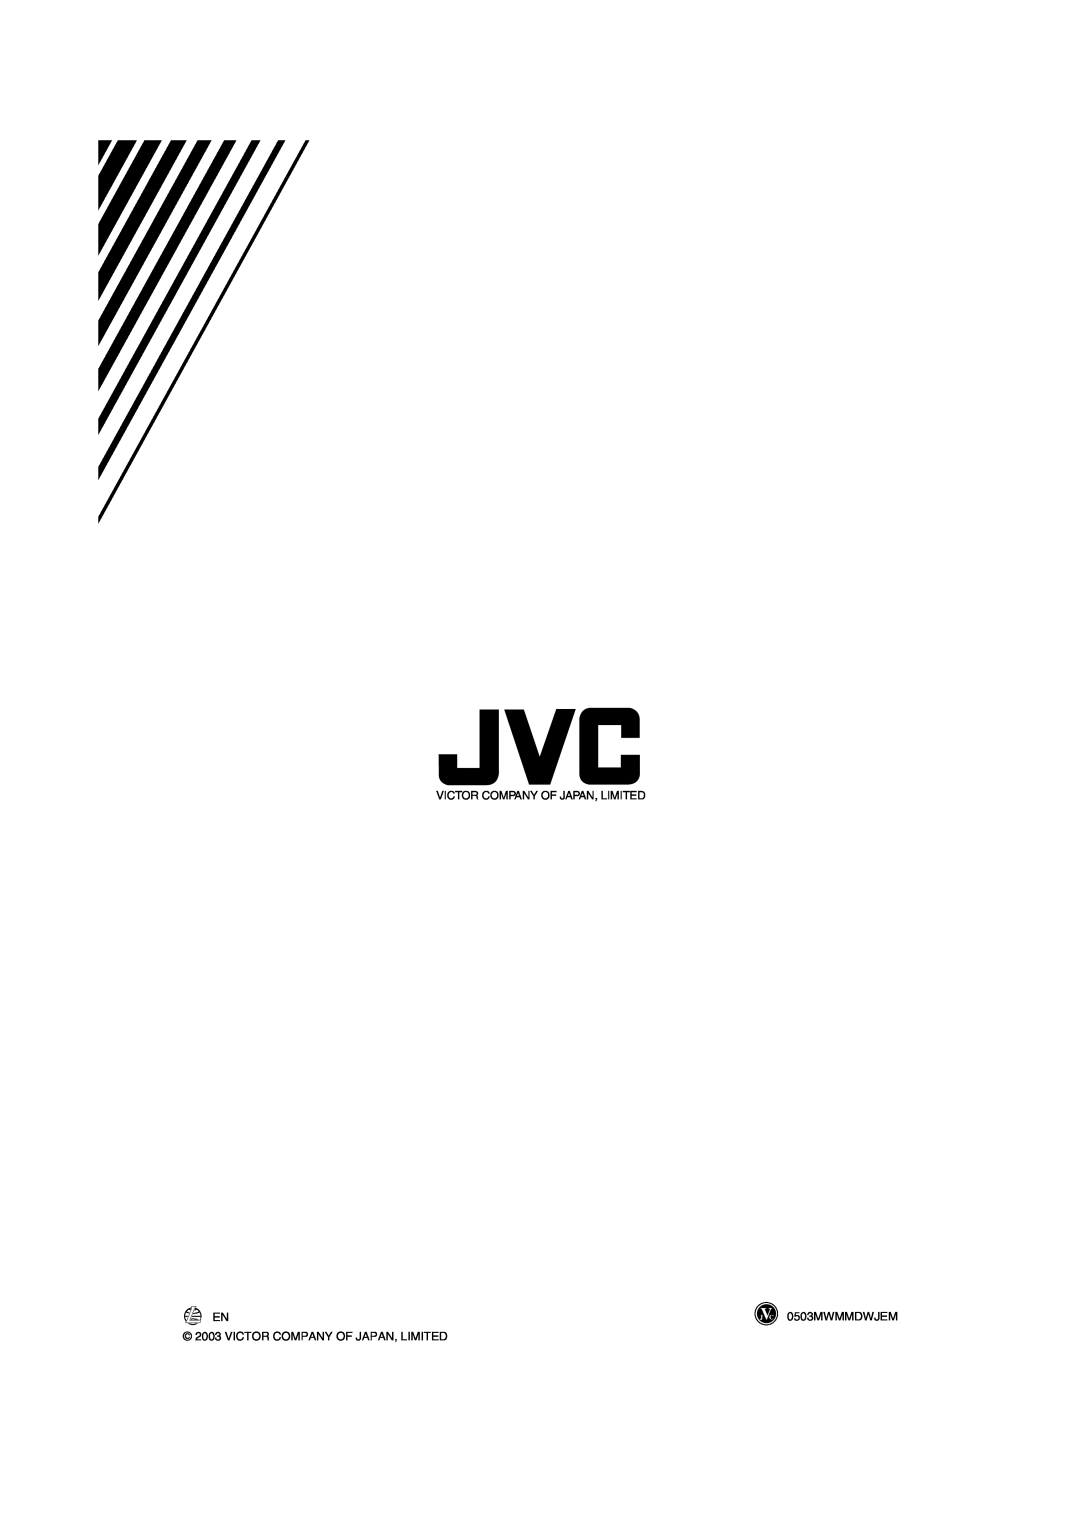 JVC UX-J60 manual 0503MWMMDWJEM, Victor Company Of Japan, Limited 